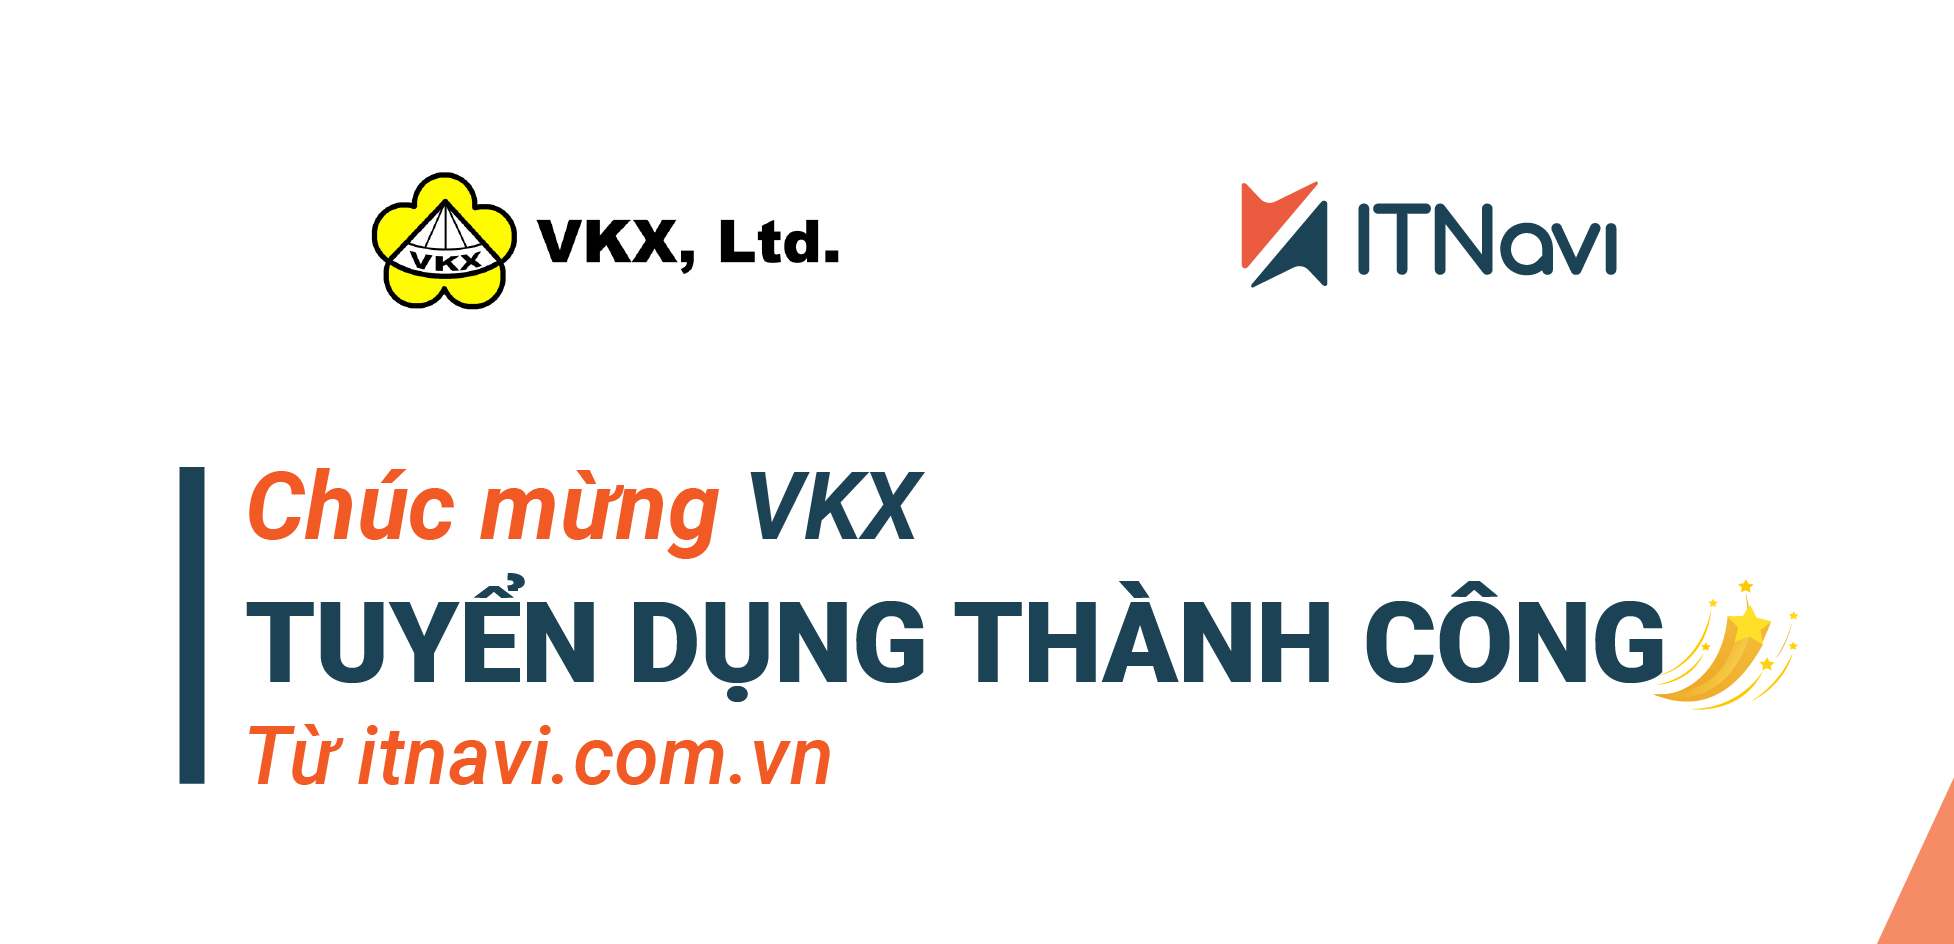 Lan tỏa tuyển dụng thành công từ VKX đến các nhà tuyển dụng tại ITNavi